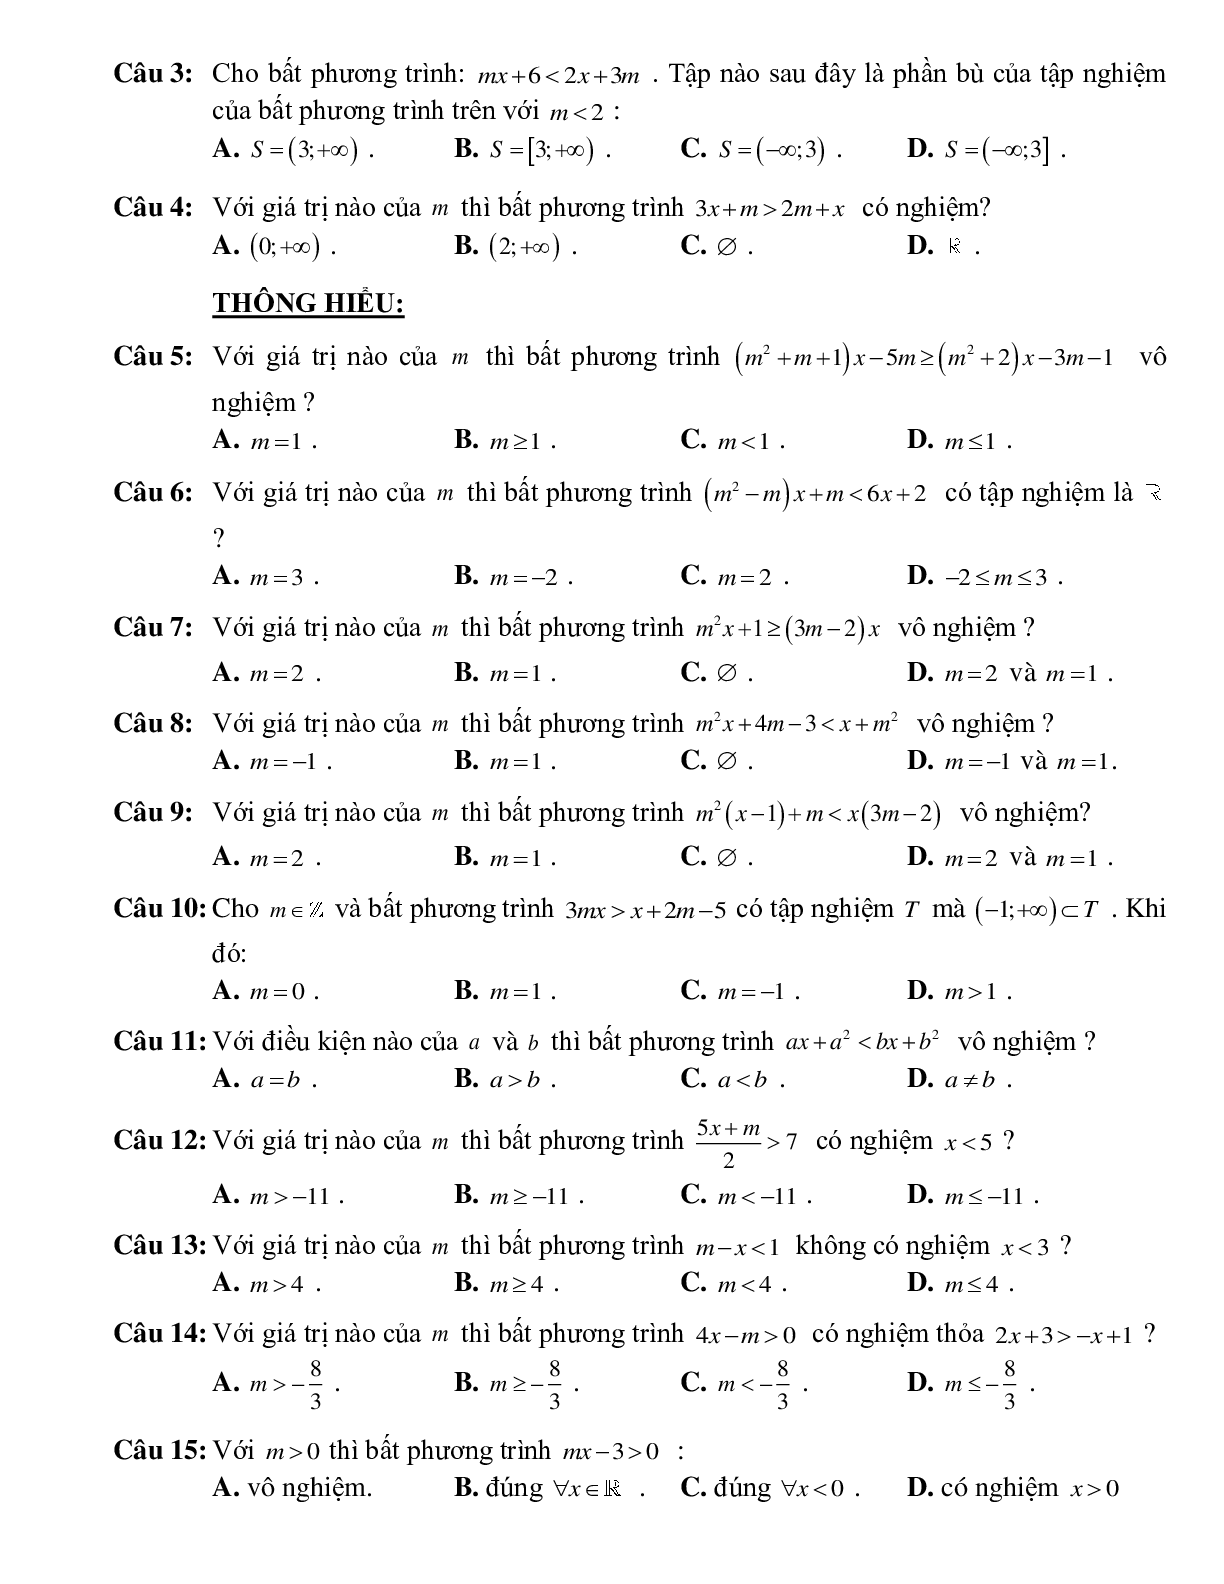 Bài tập tìm tham số để bất phương trình bậc nhất một ẩn có nghiệm thỏa mãn điều kiện Toán 10 (trang 3)